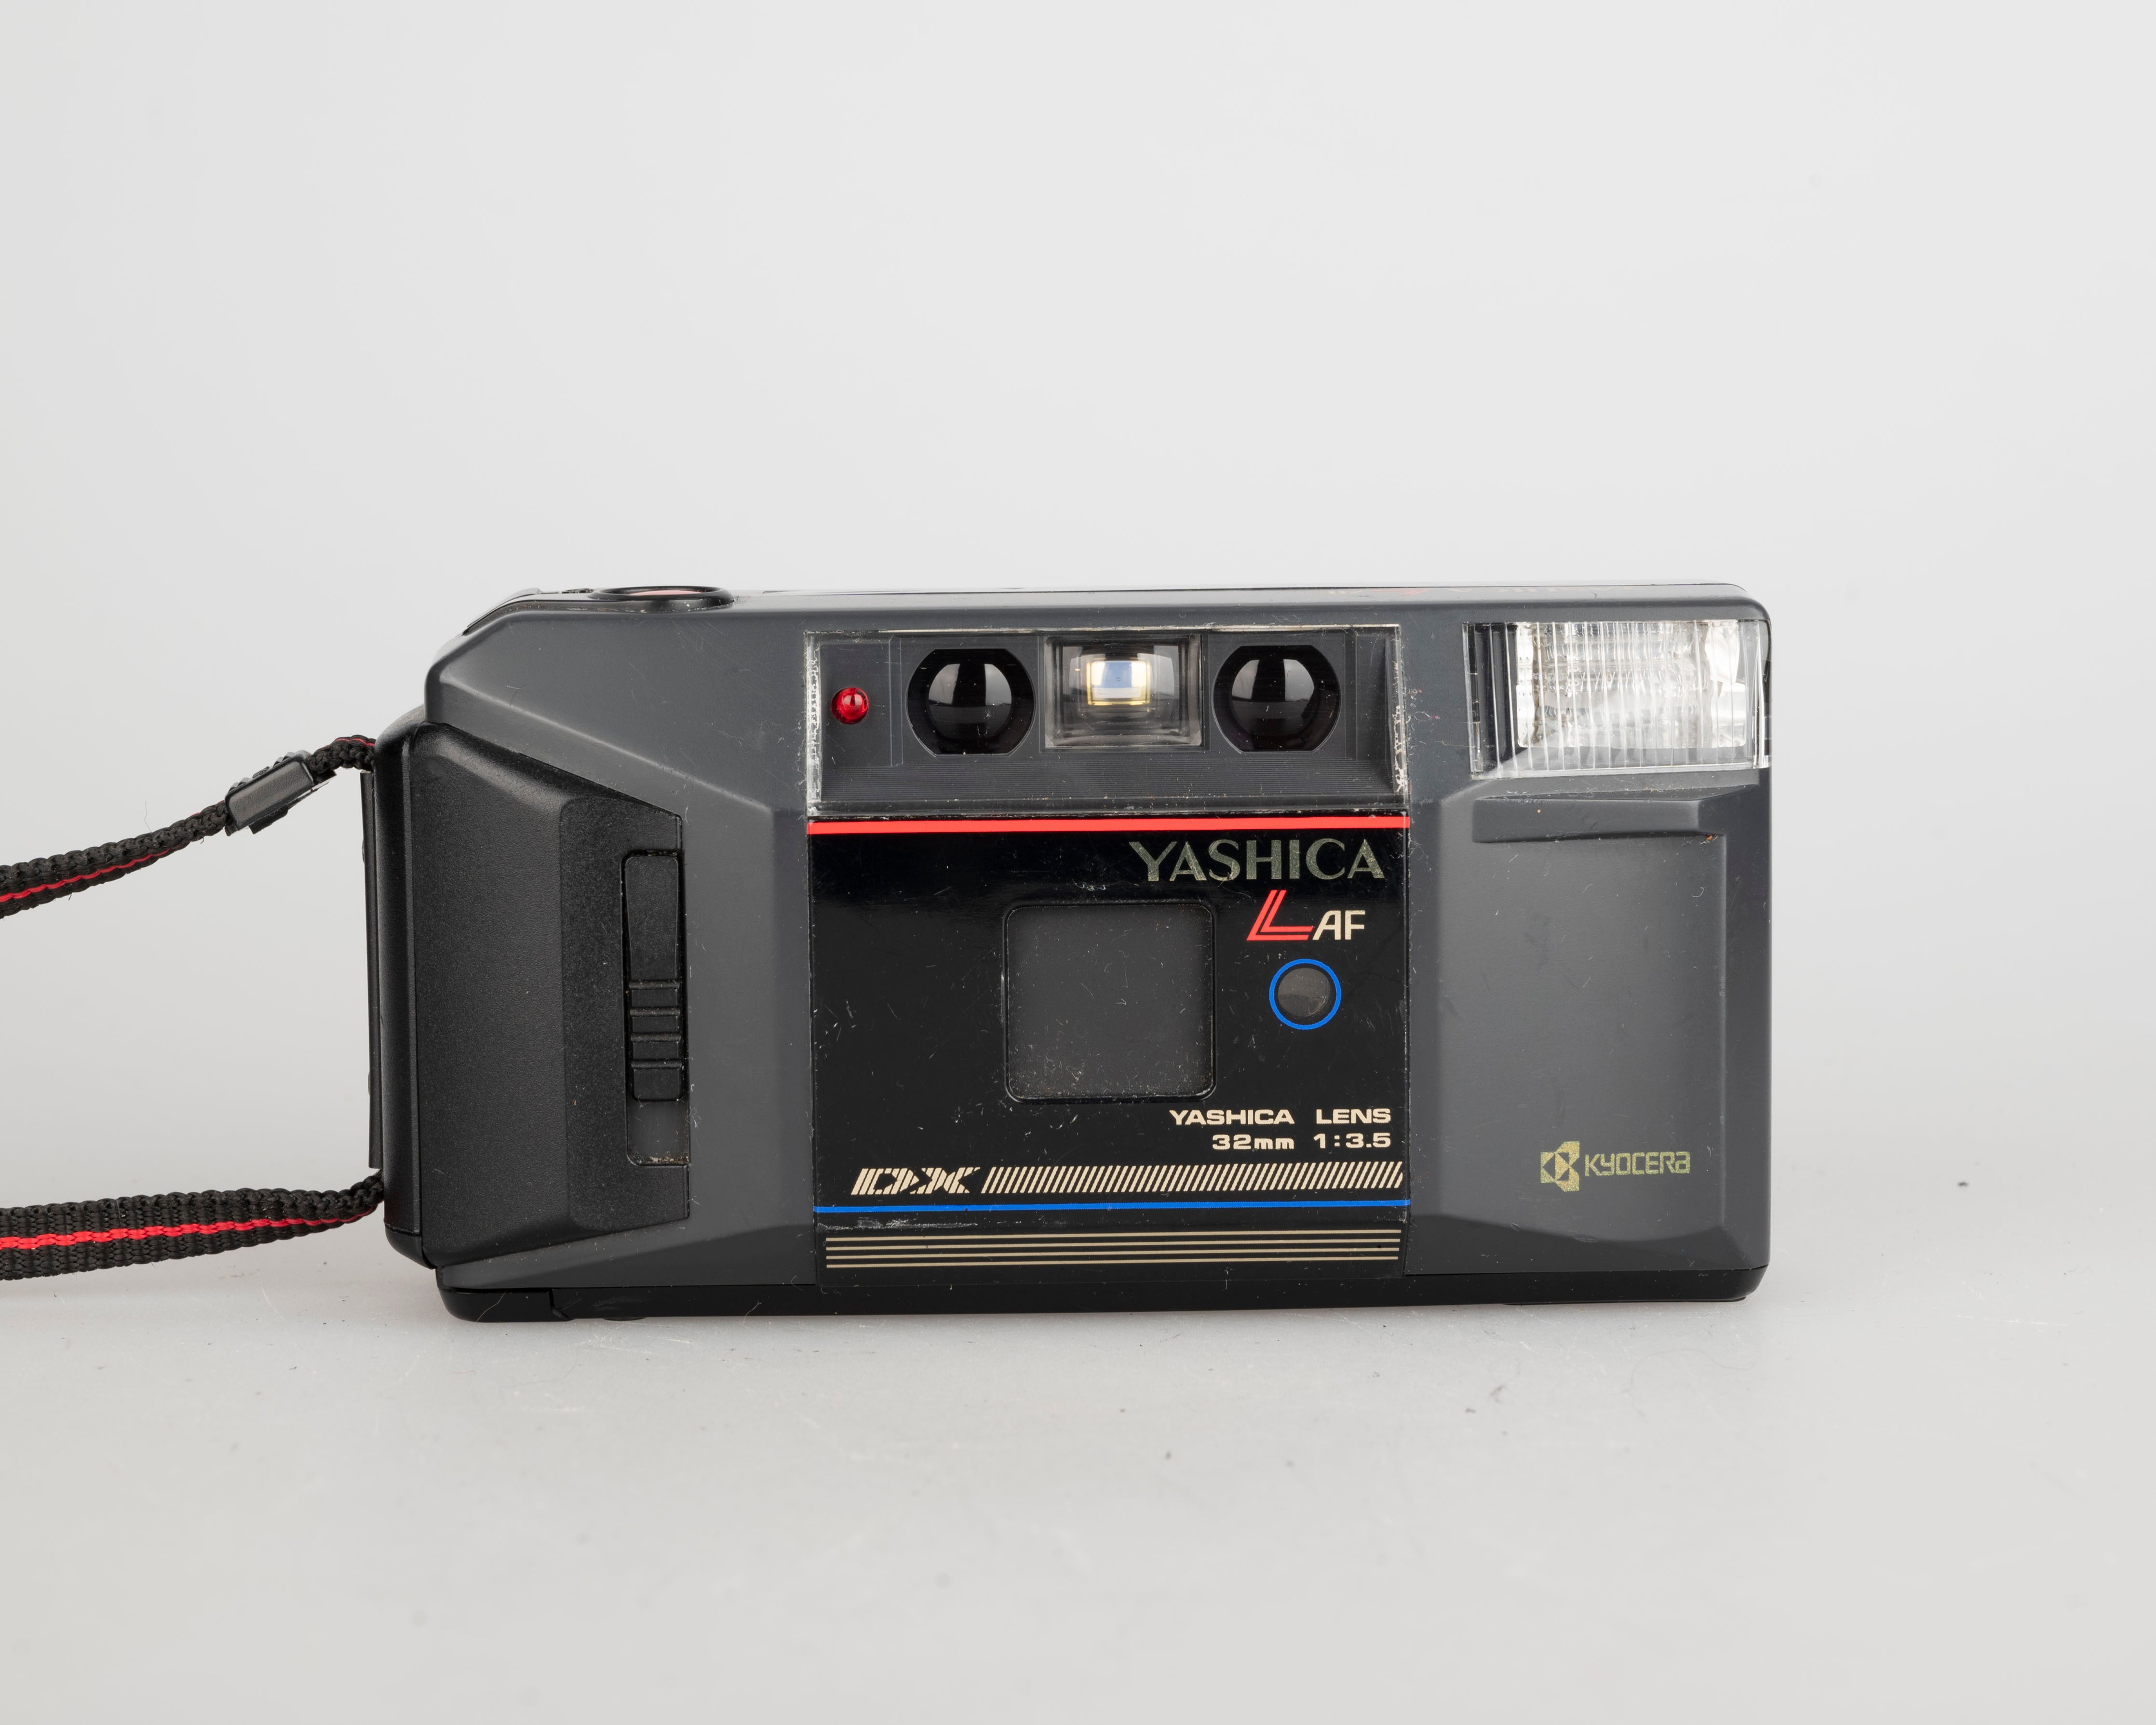 Yashica L-AF 35mm film camera (serial 5129032) – New Wave Pool